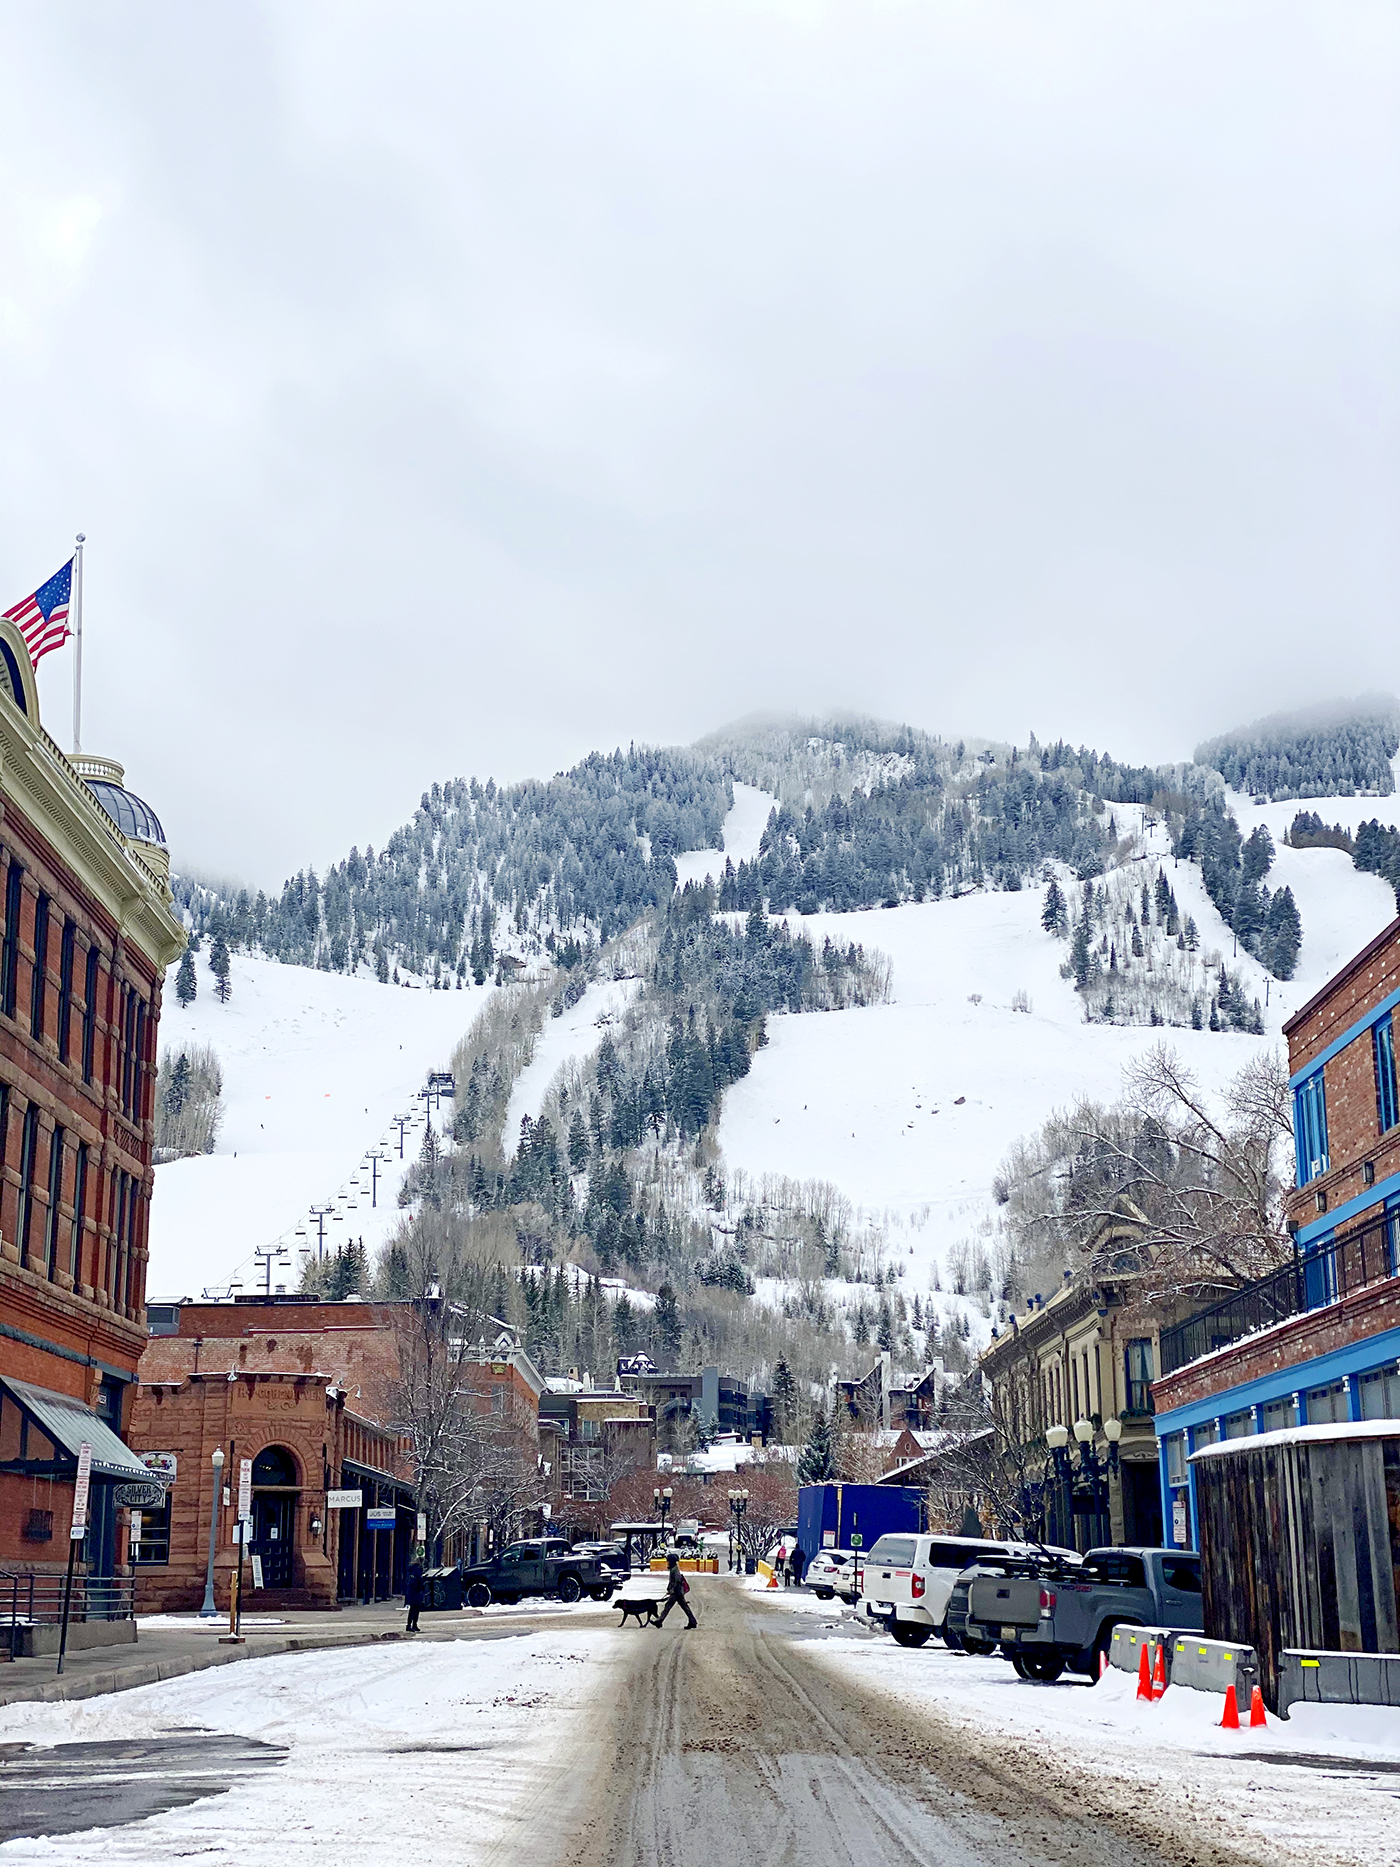 Winter vacation in Aspen, Colorado by Marla Meridith